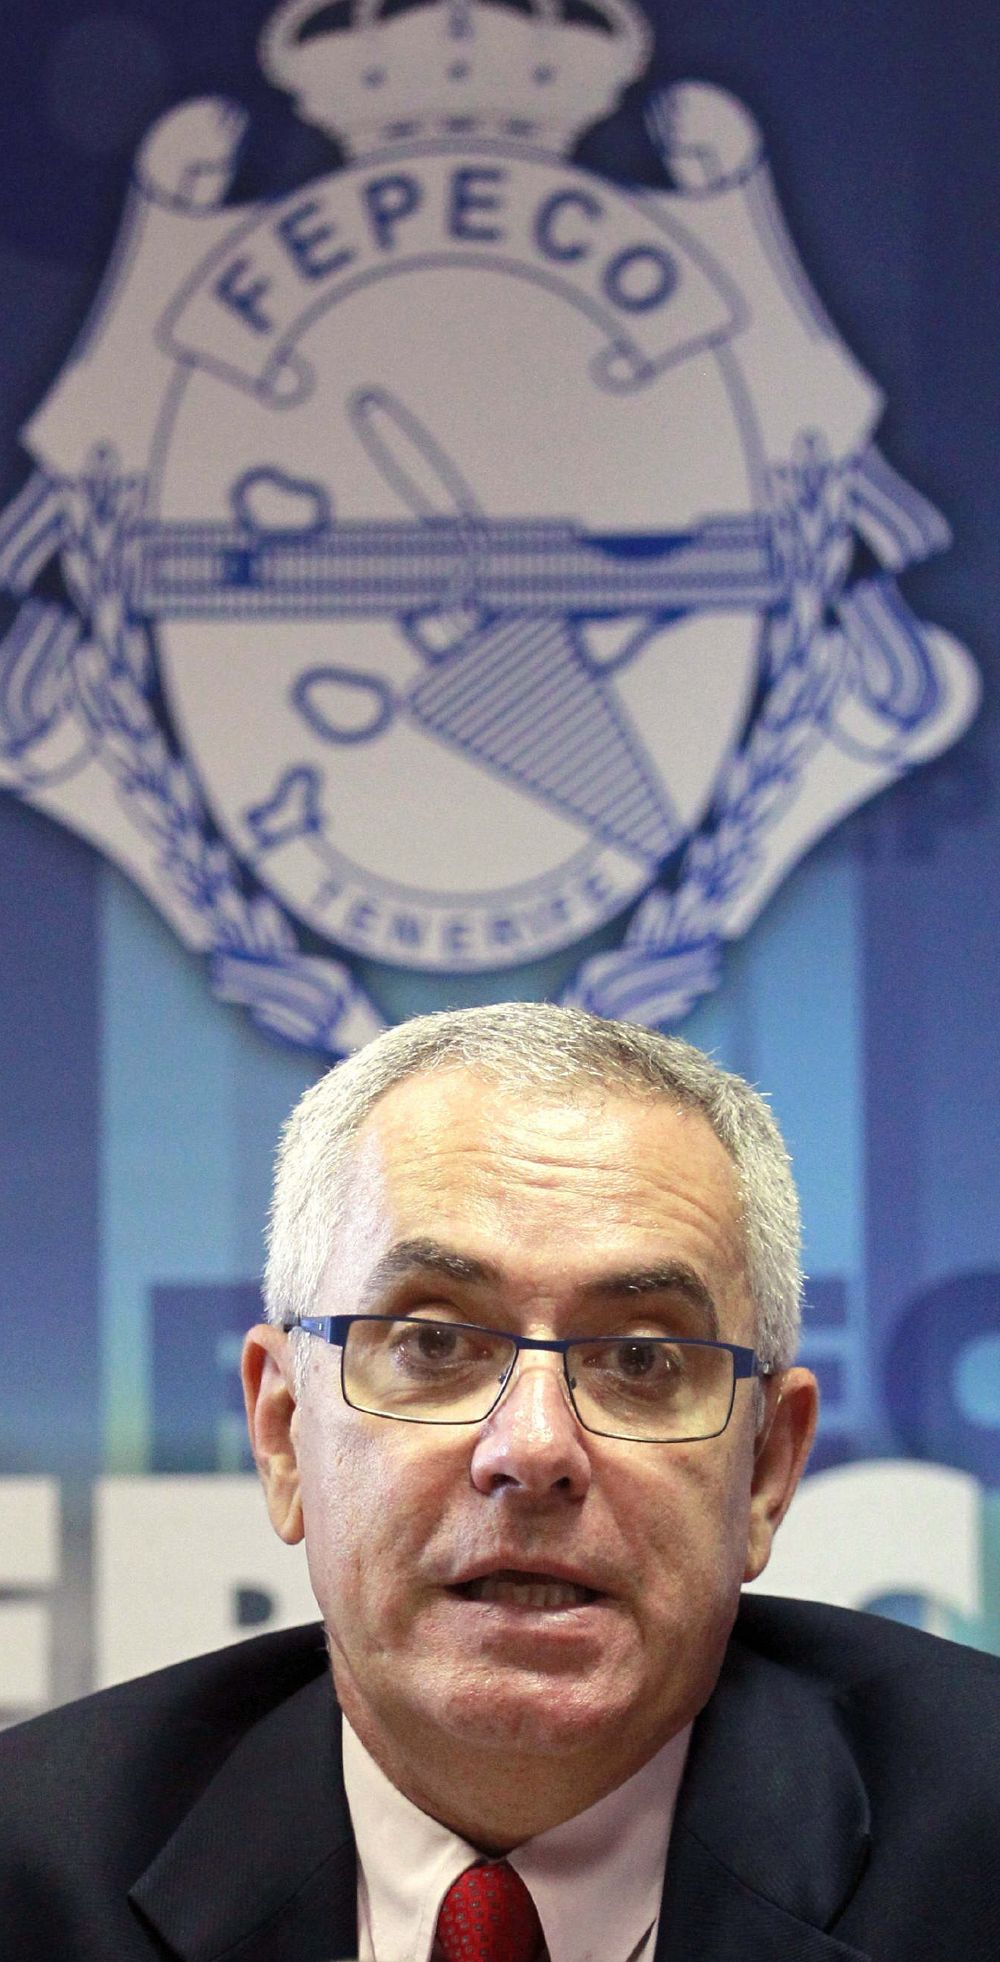 El presidente de Fepeco, Óscar Izquierdo.